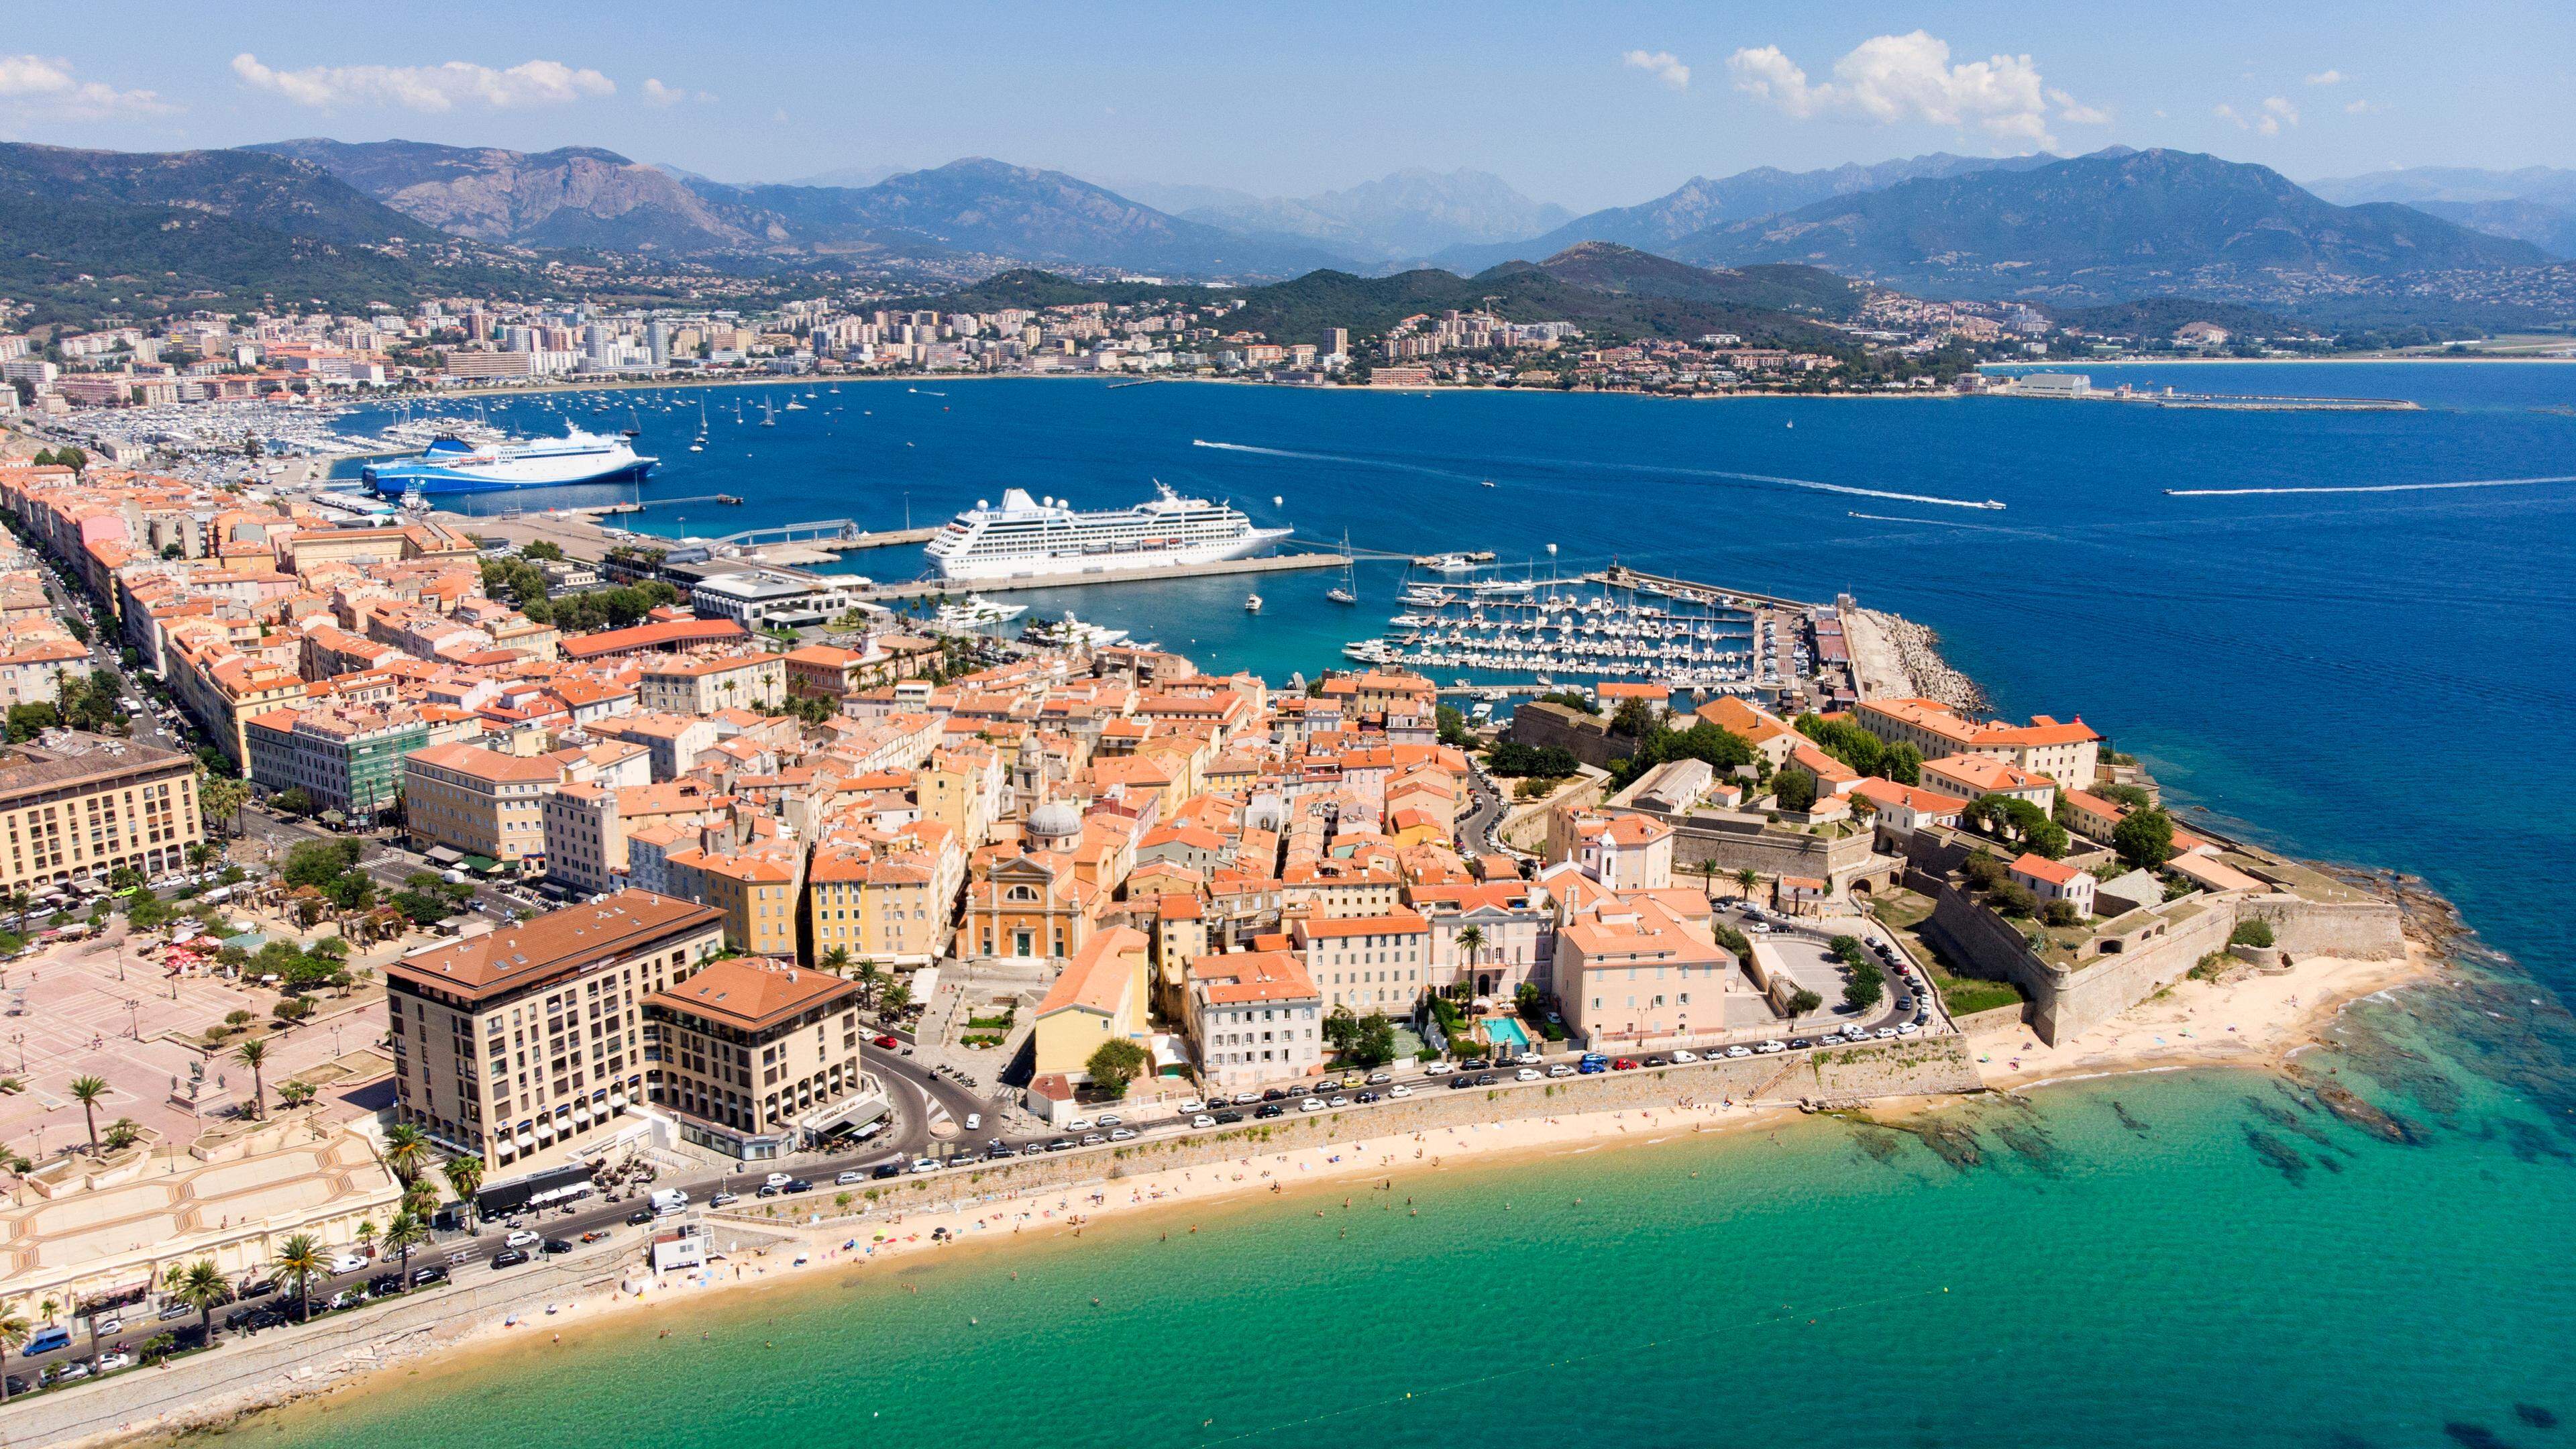 Blick auf die korsische Hauptstadt Ajaccio: Das beliebte Urlaubsziel Korsika ist geprägt von organisierter Kriminalität und mafiösen Strukturen.